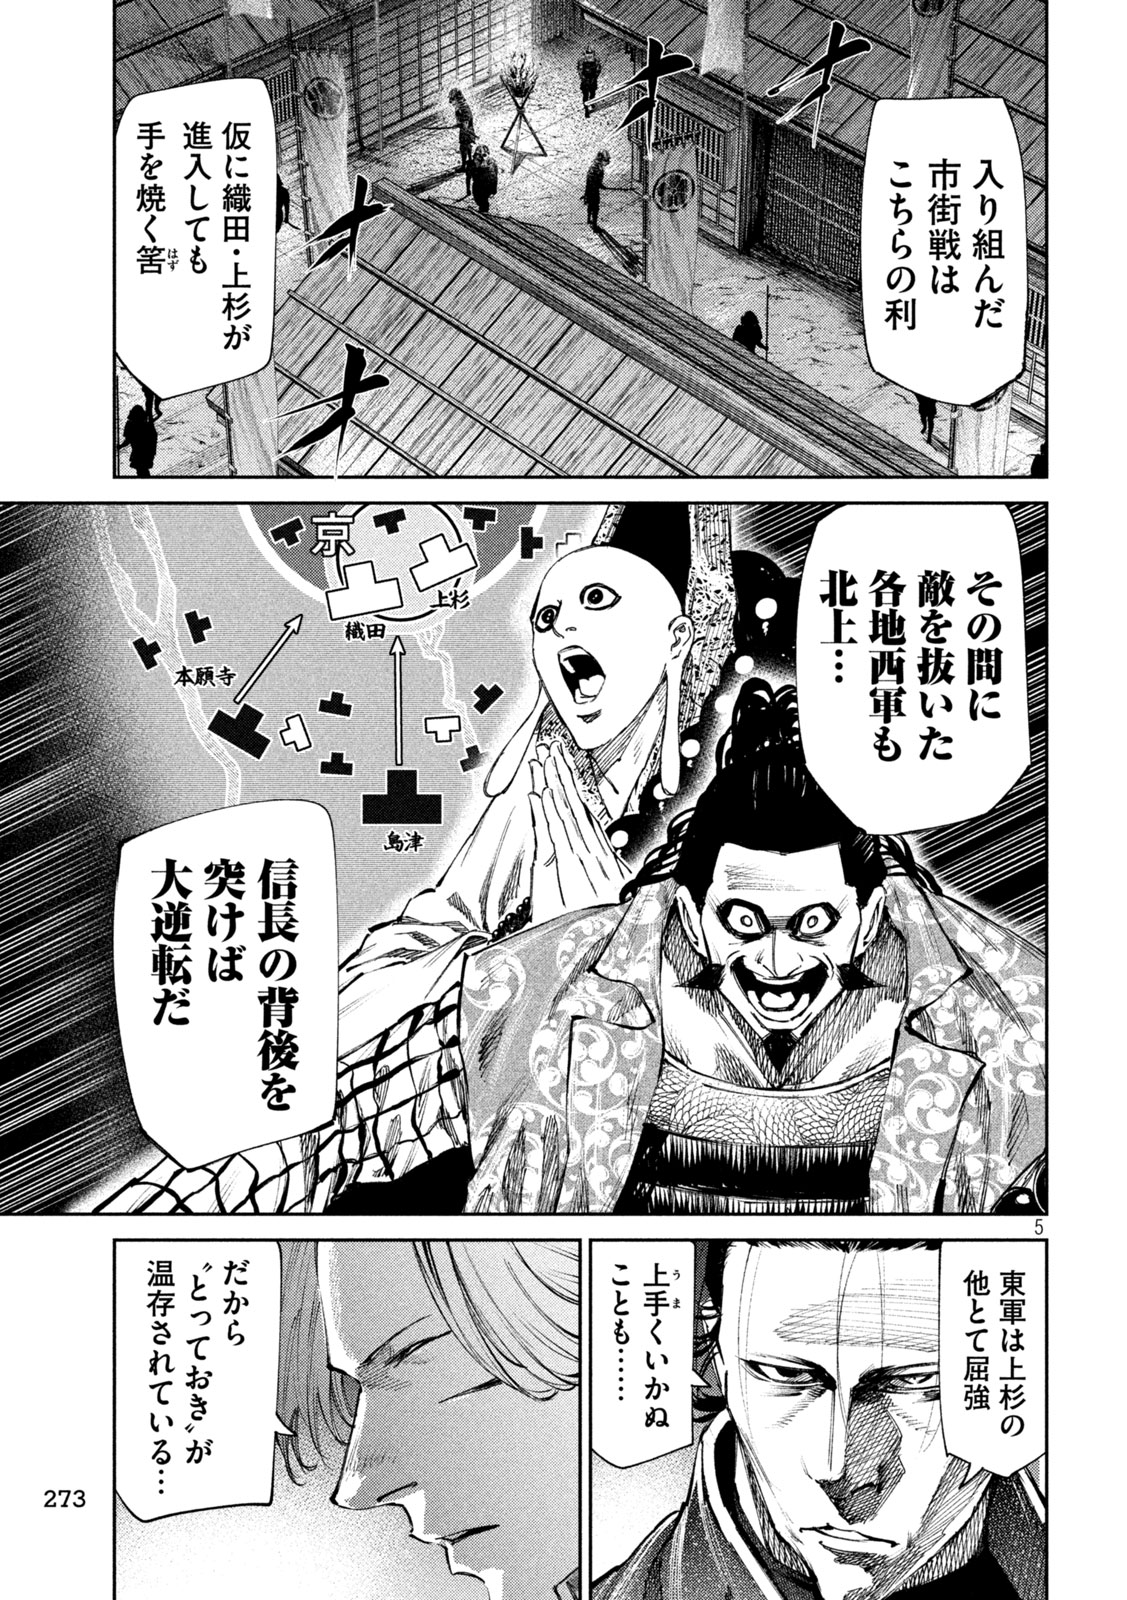 Nando toki o kurikaeshitemo Honnouji ga moerunjaga! - Chapter 115 - Page 5